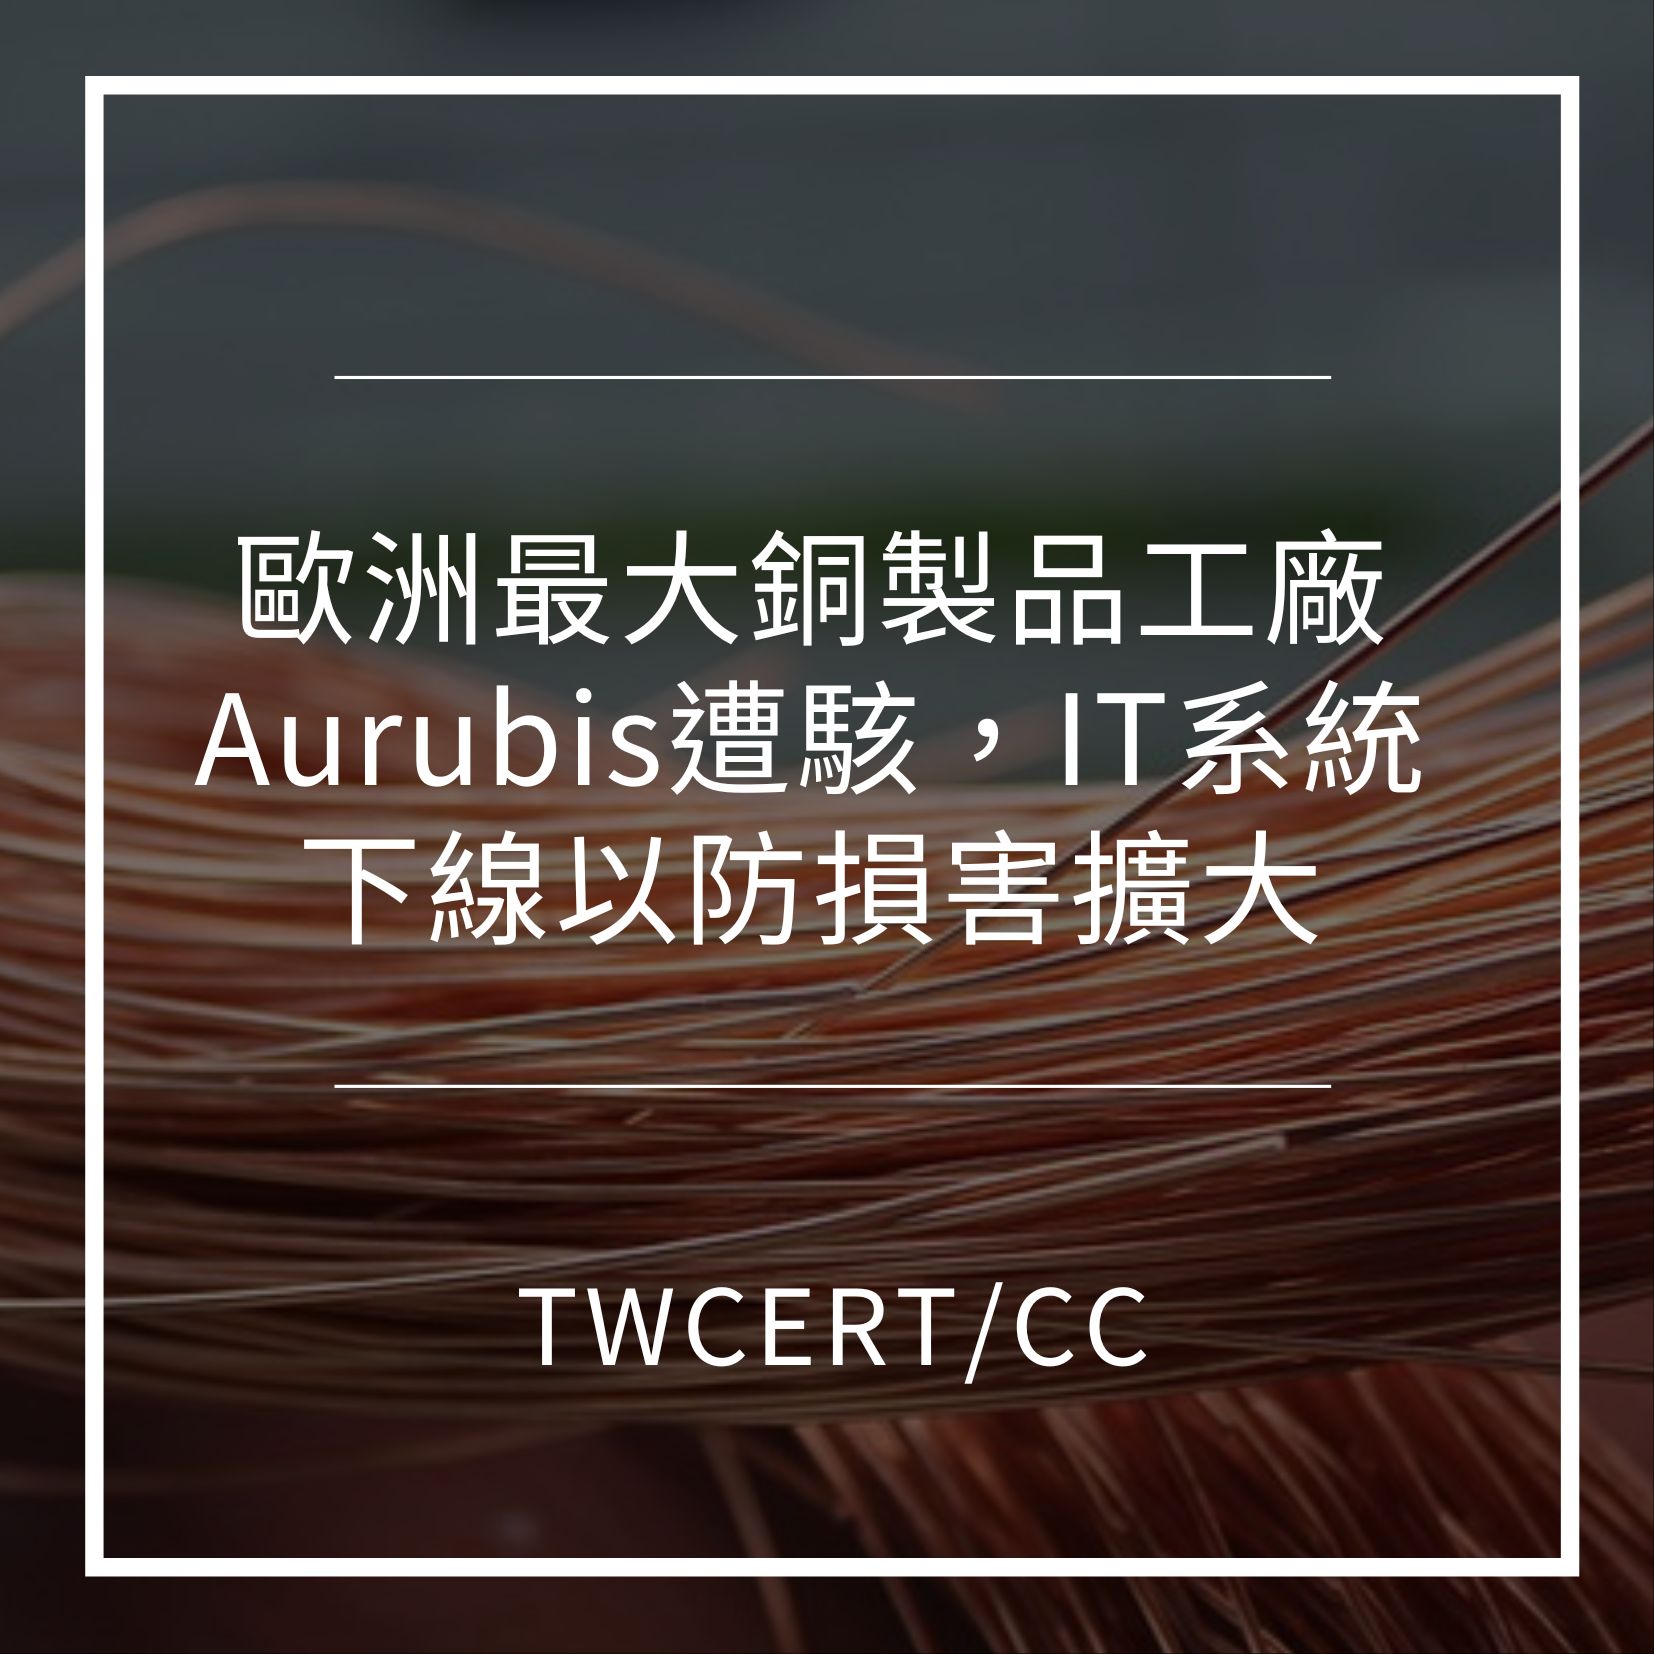 歐洲最大銅製品工廠 Aurubis 遭駭，IT 系統下線以防損害擴大 TWCERT/CC